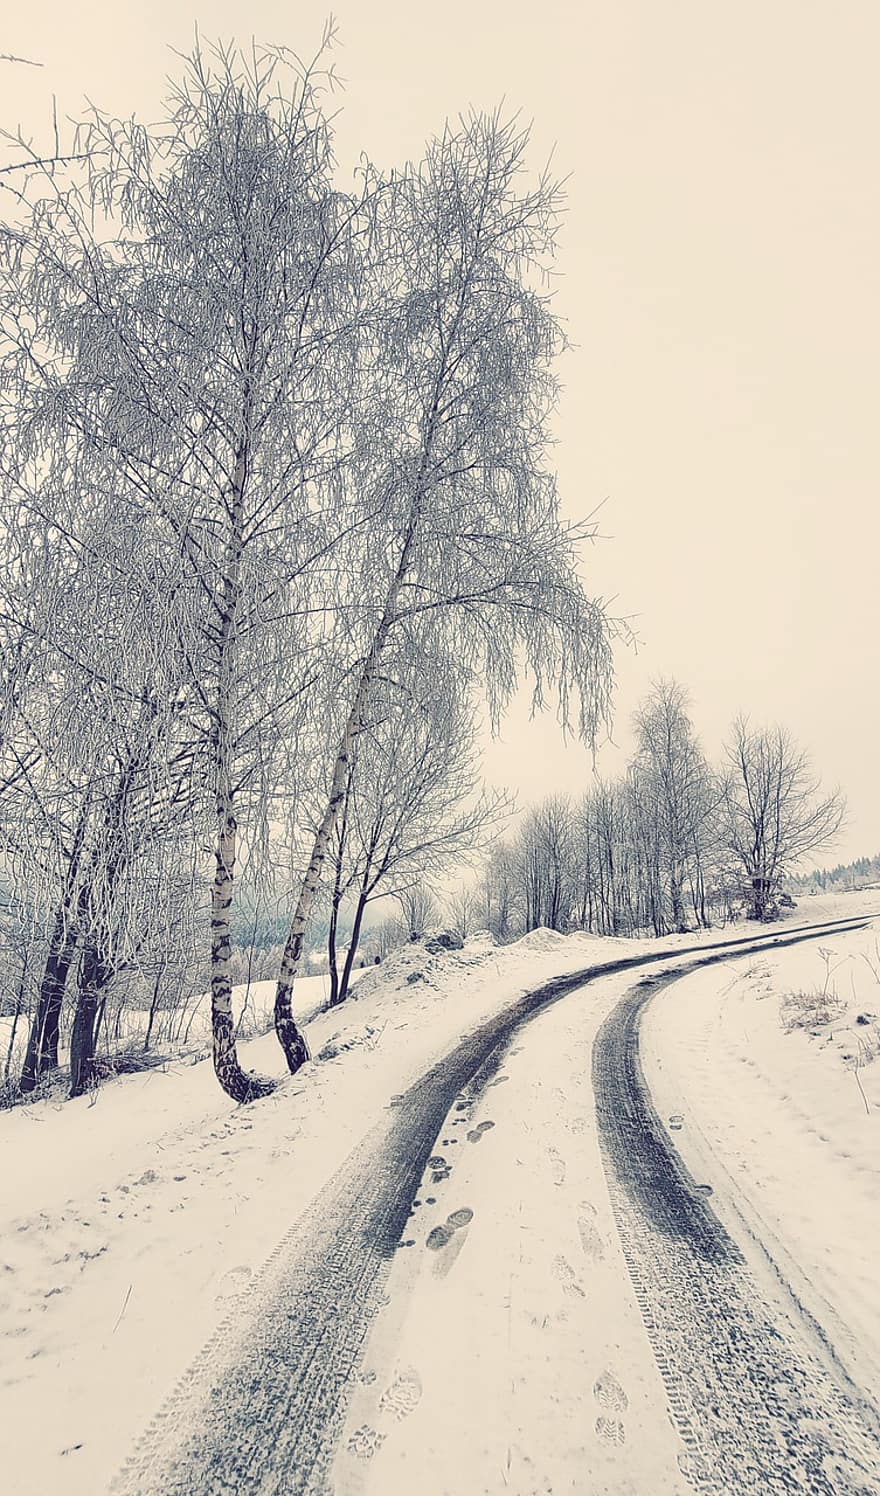 सड़क, सर्दी, प्रकृति, मौसम, सड़क पर, हिमपात, पथ, मार्ग